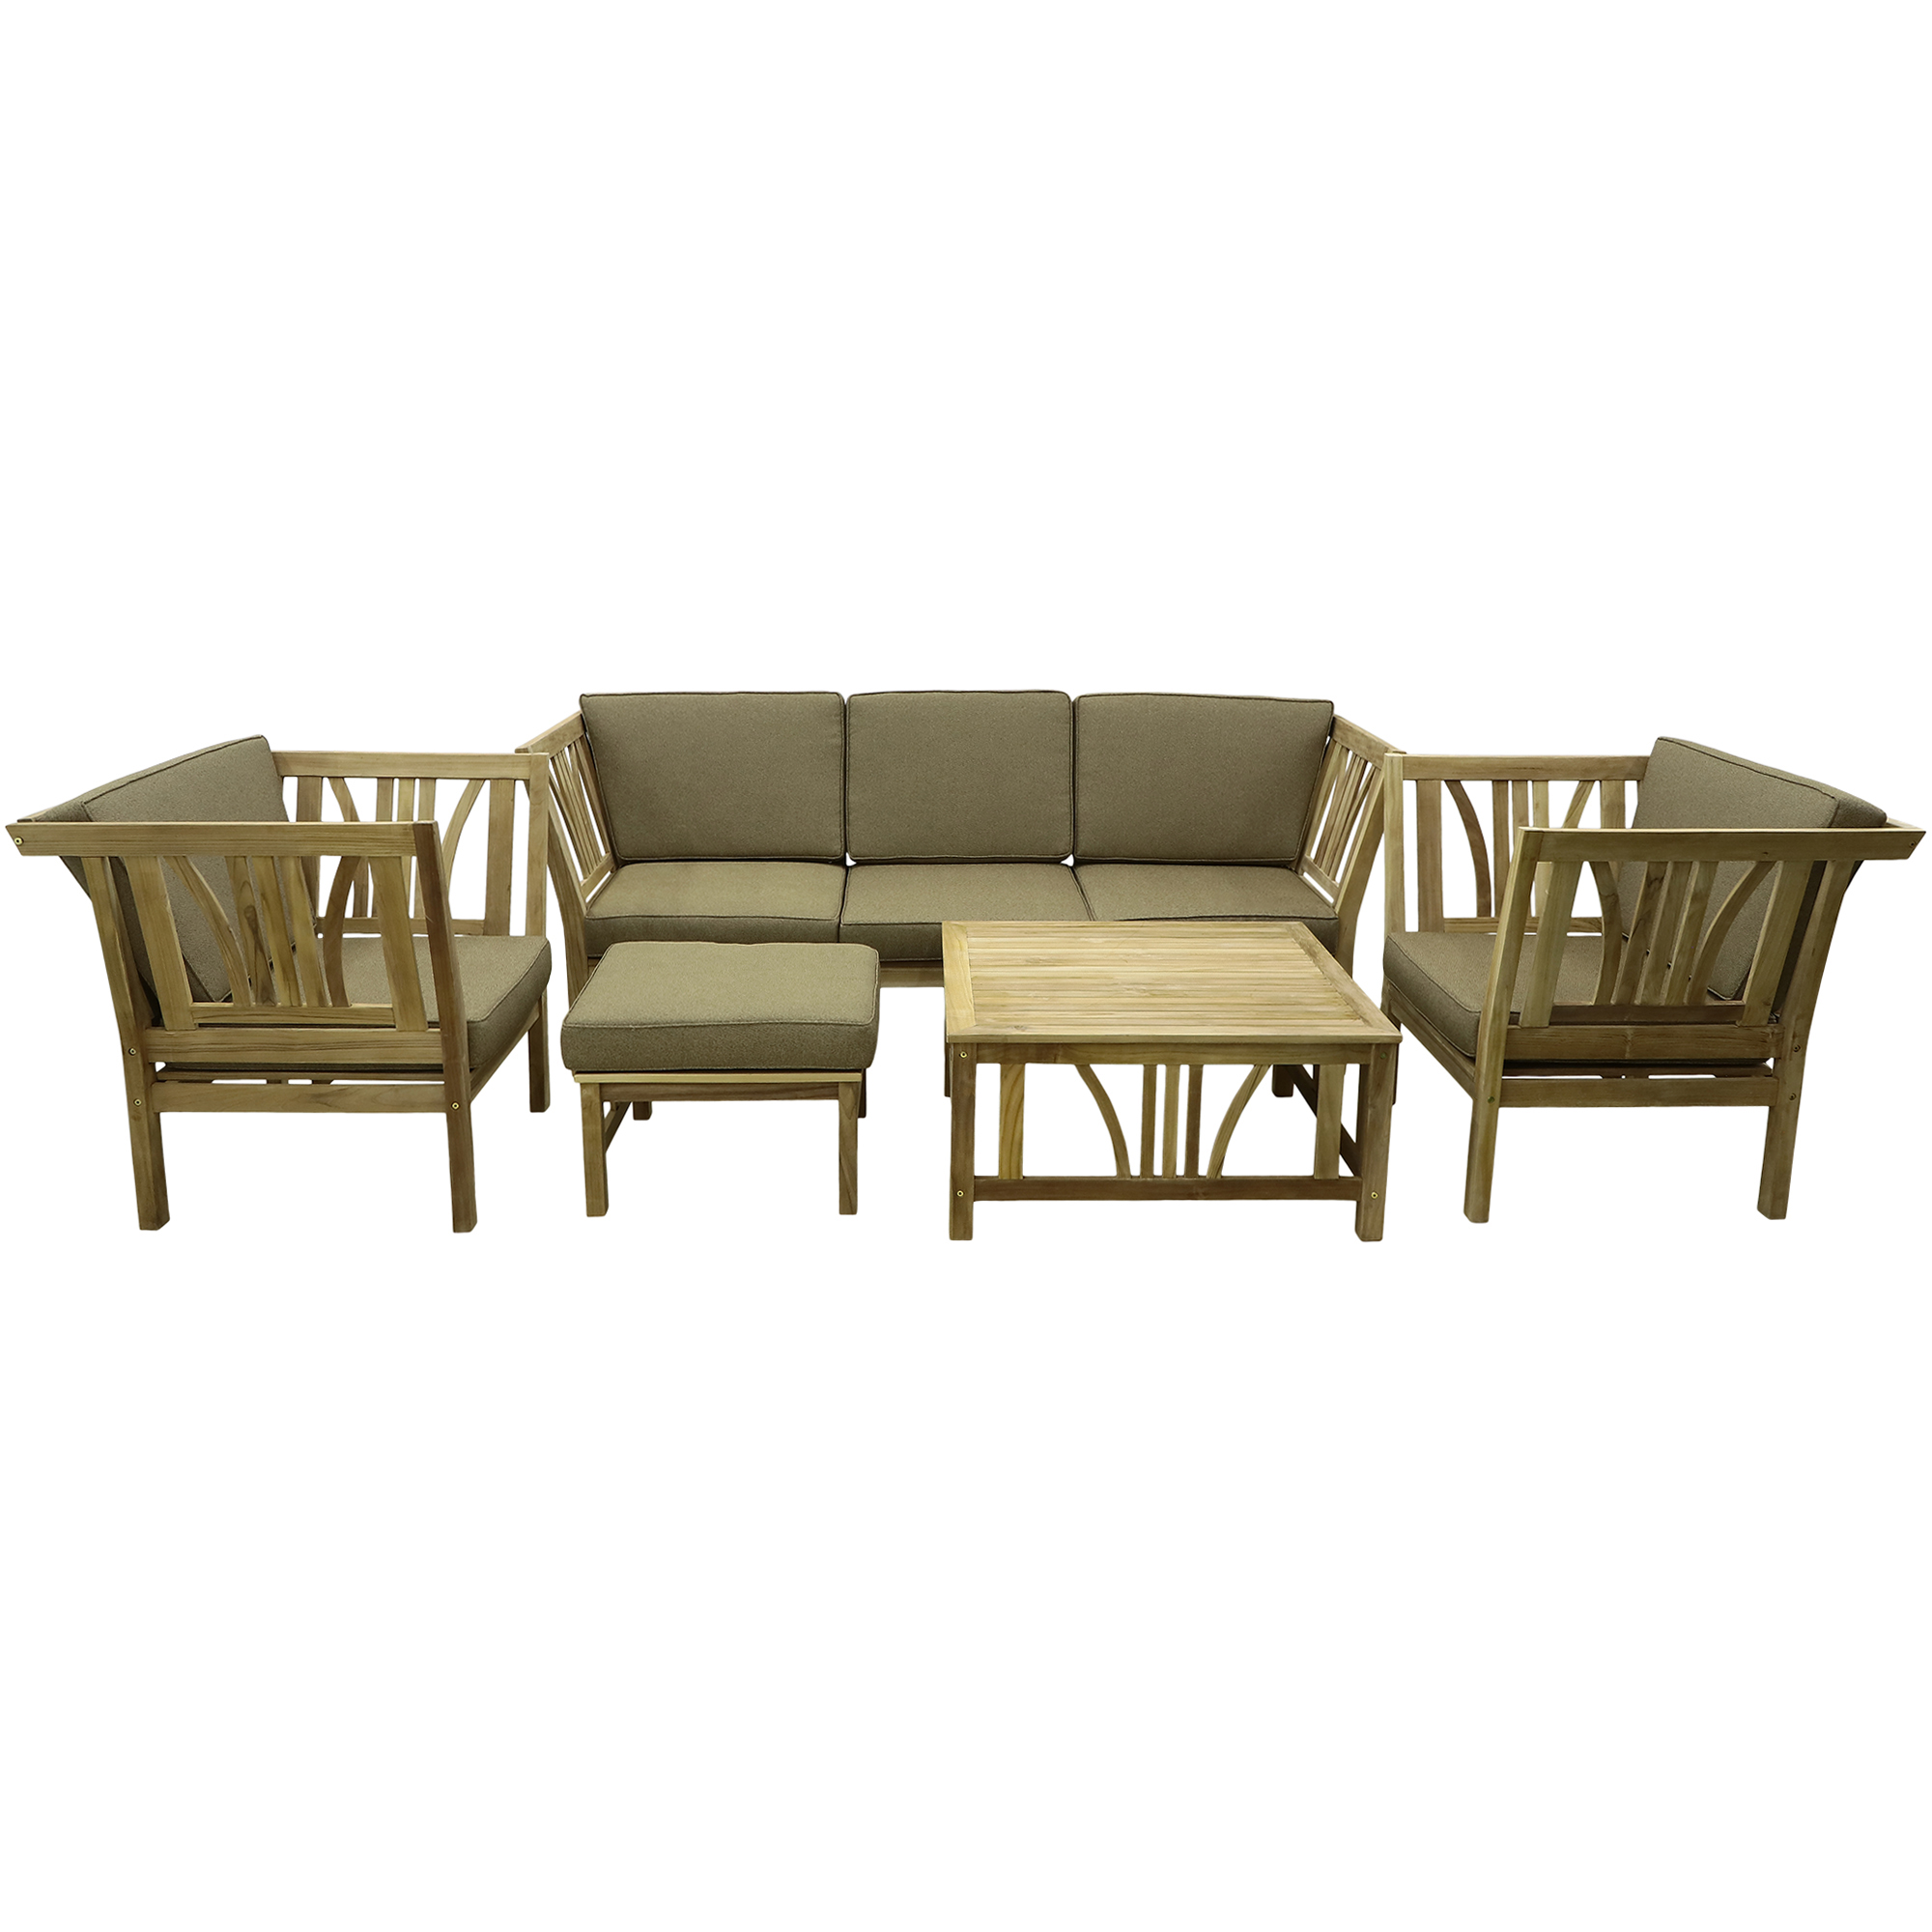 Комплект мебели Jepara Havanah 5 предметов, цвет коричневый, размер 195х88х80 - фото 1